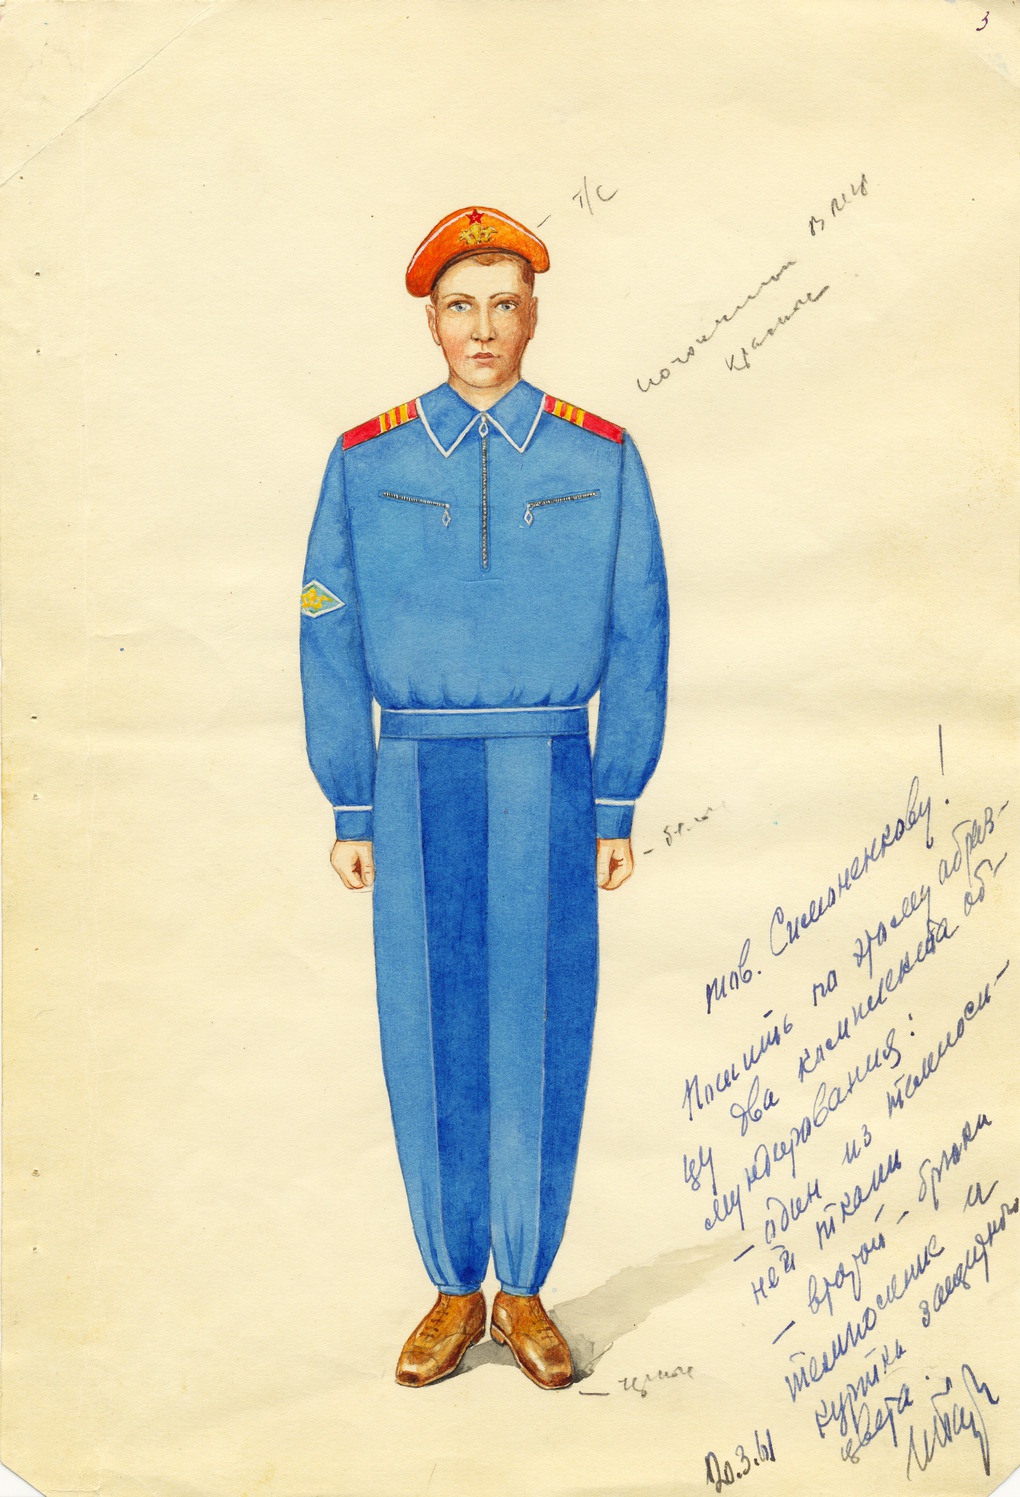 Рисунок проекта формы одежды, предложенной командованием ВДВ, с резолюцией Маршала Советского Союза И.С. Баграмяна. 1961 г.